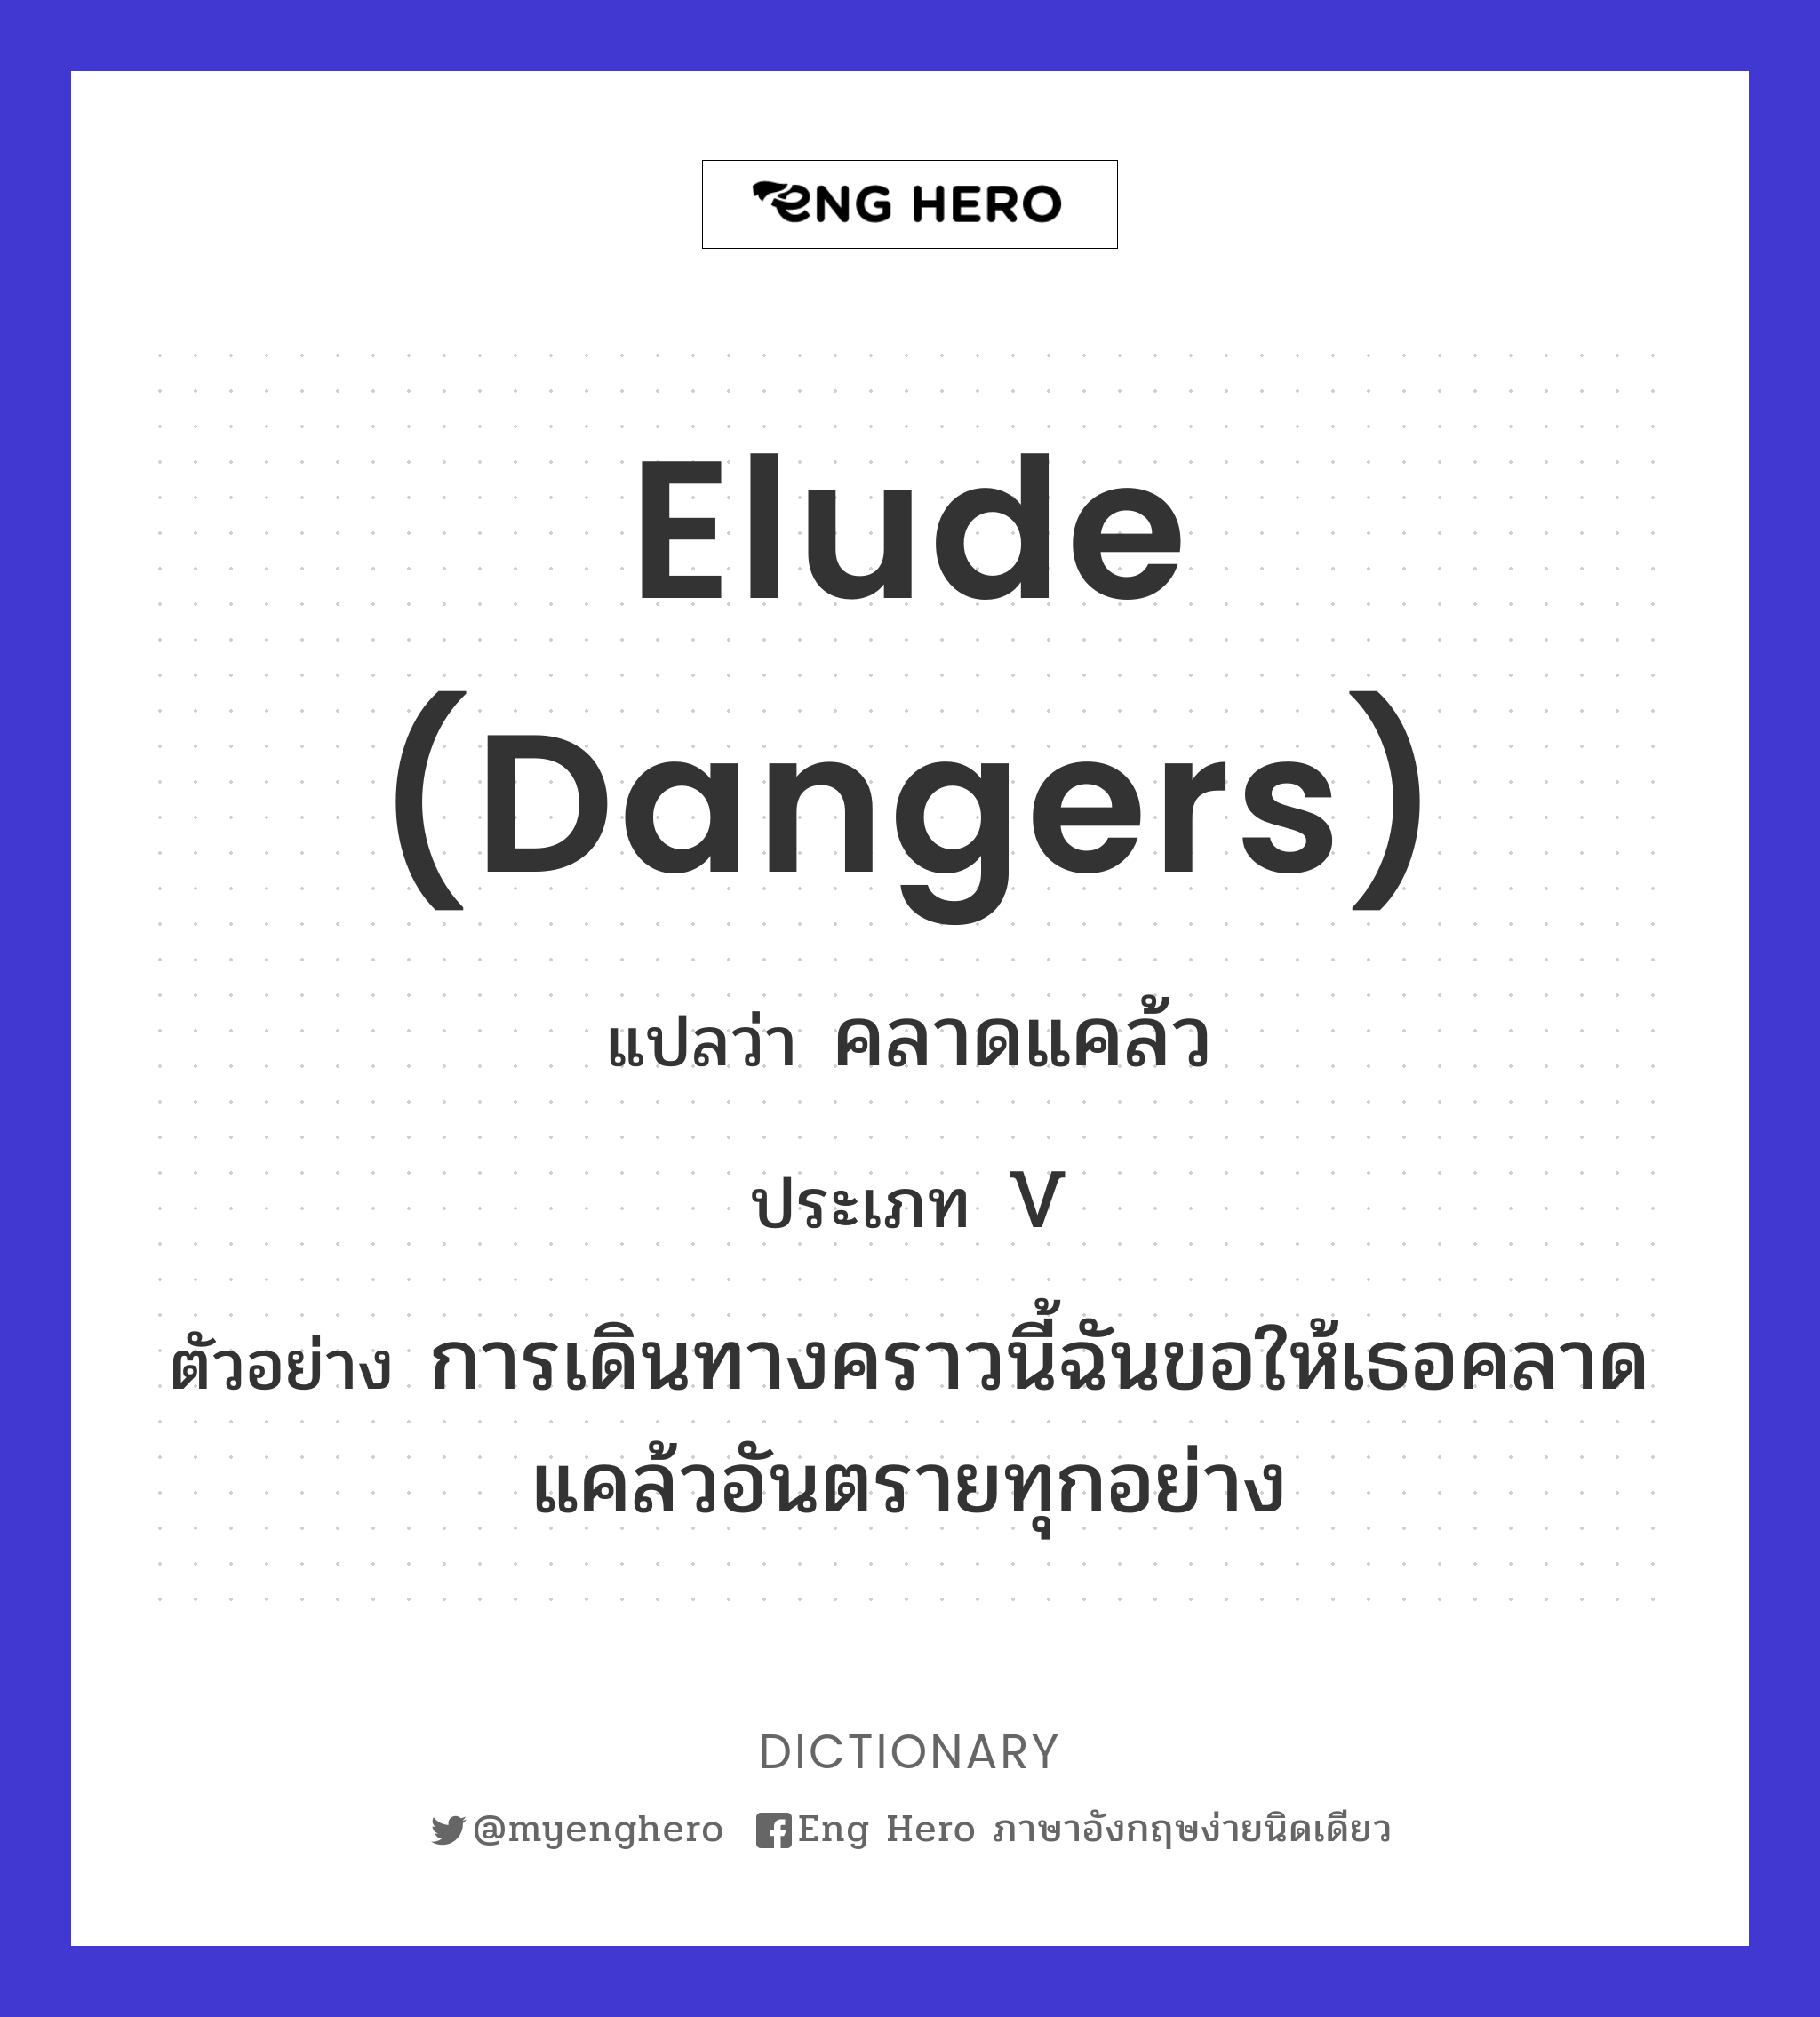 elude (dangers)